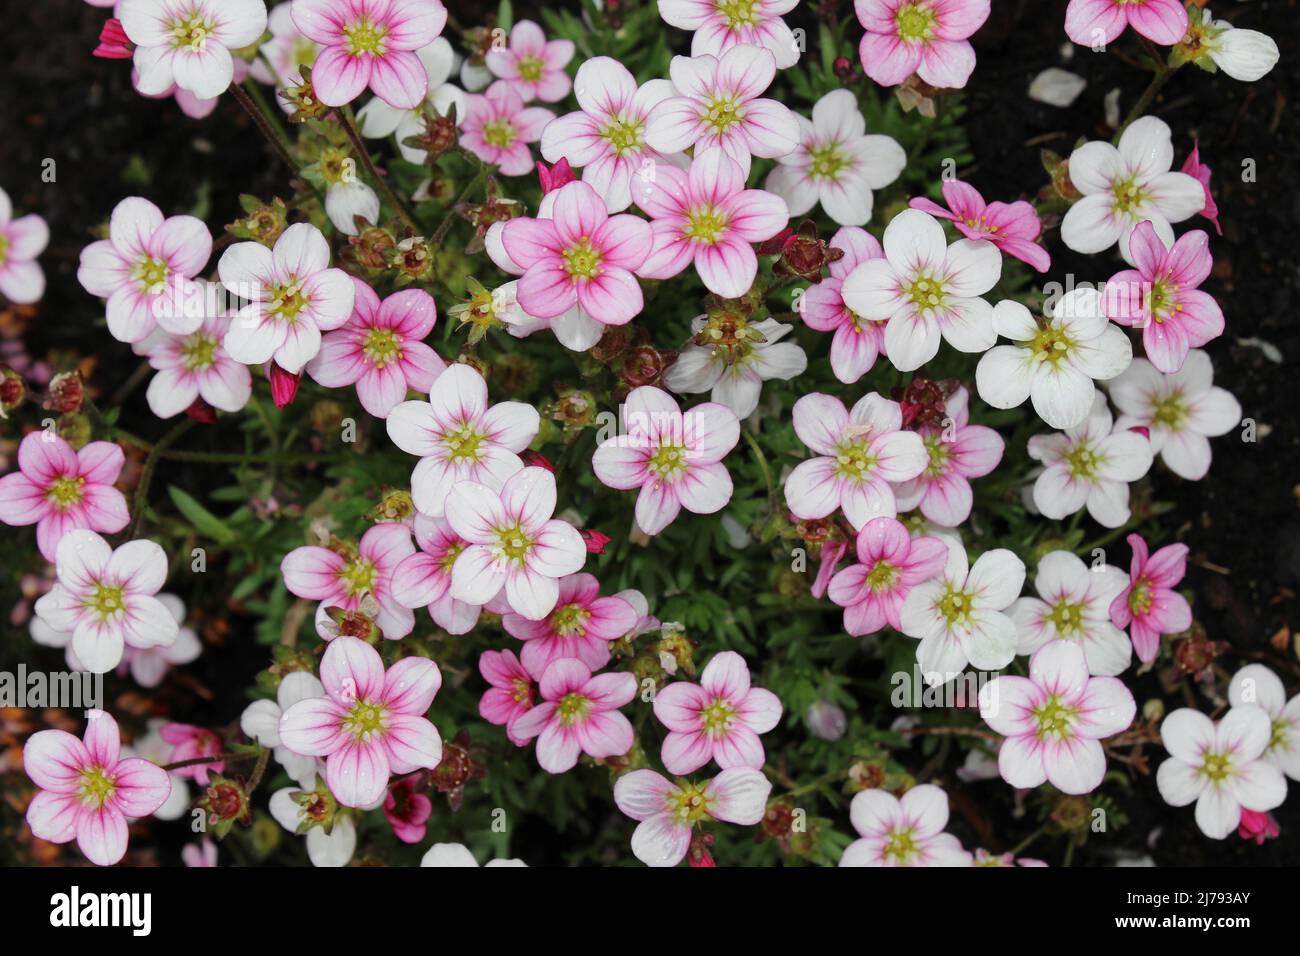 Saxifraga × arendsii Stock Photo